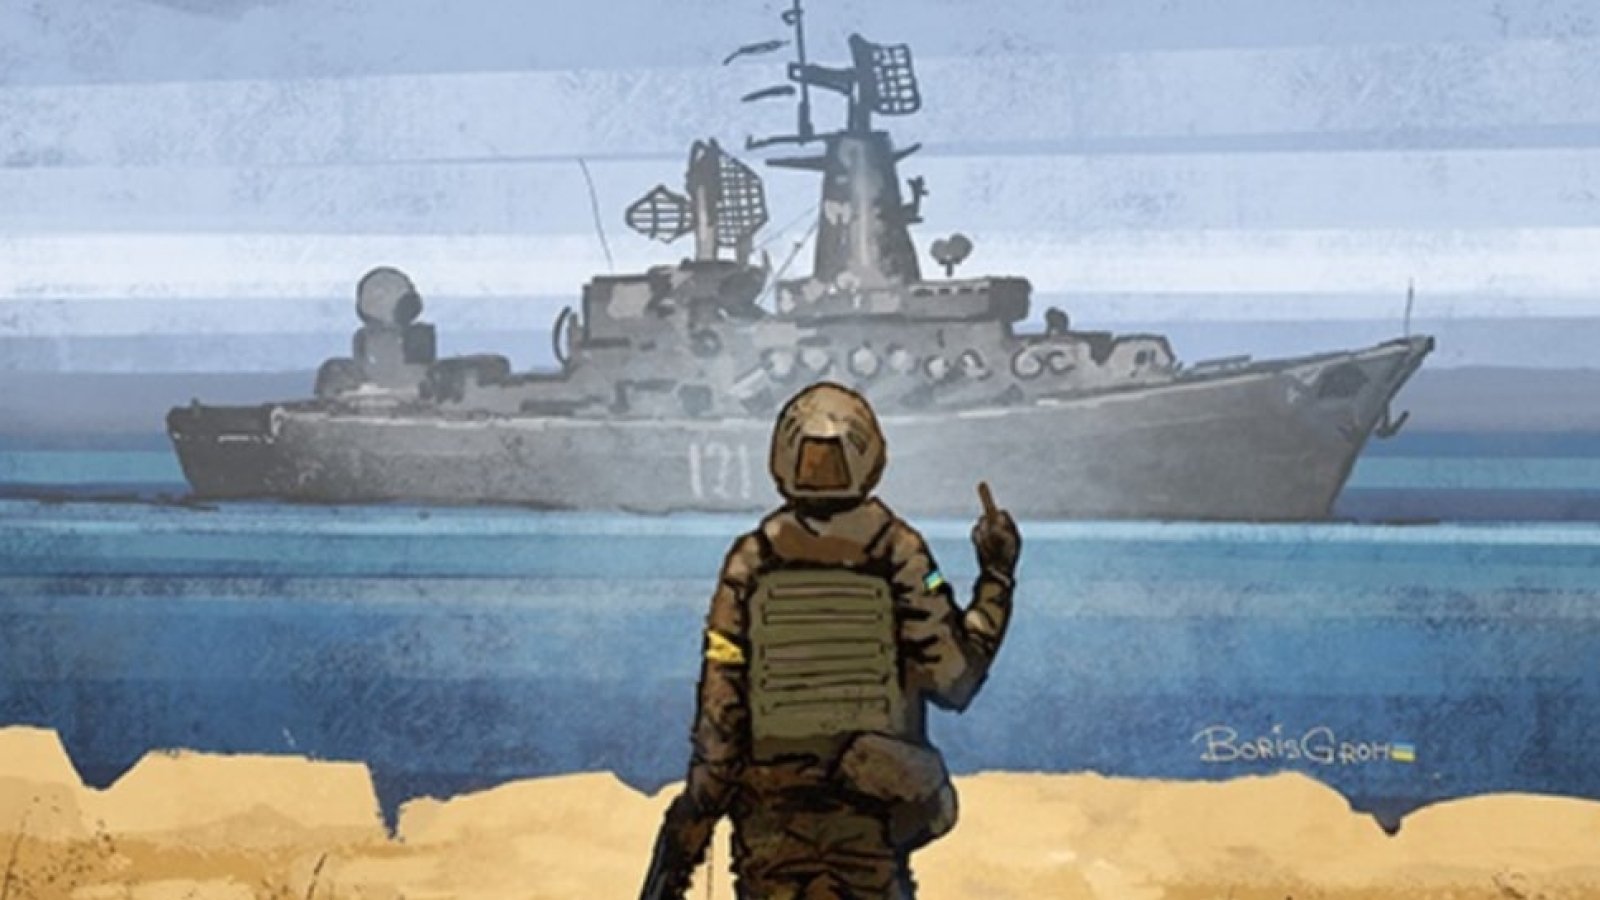 Попробуйте фильтр Укпрпочты для Instagram, чтобы увидеть, как тонет крейсер «Москва» и выиграть новую марку с кораблем